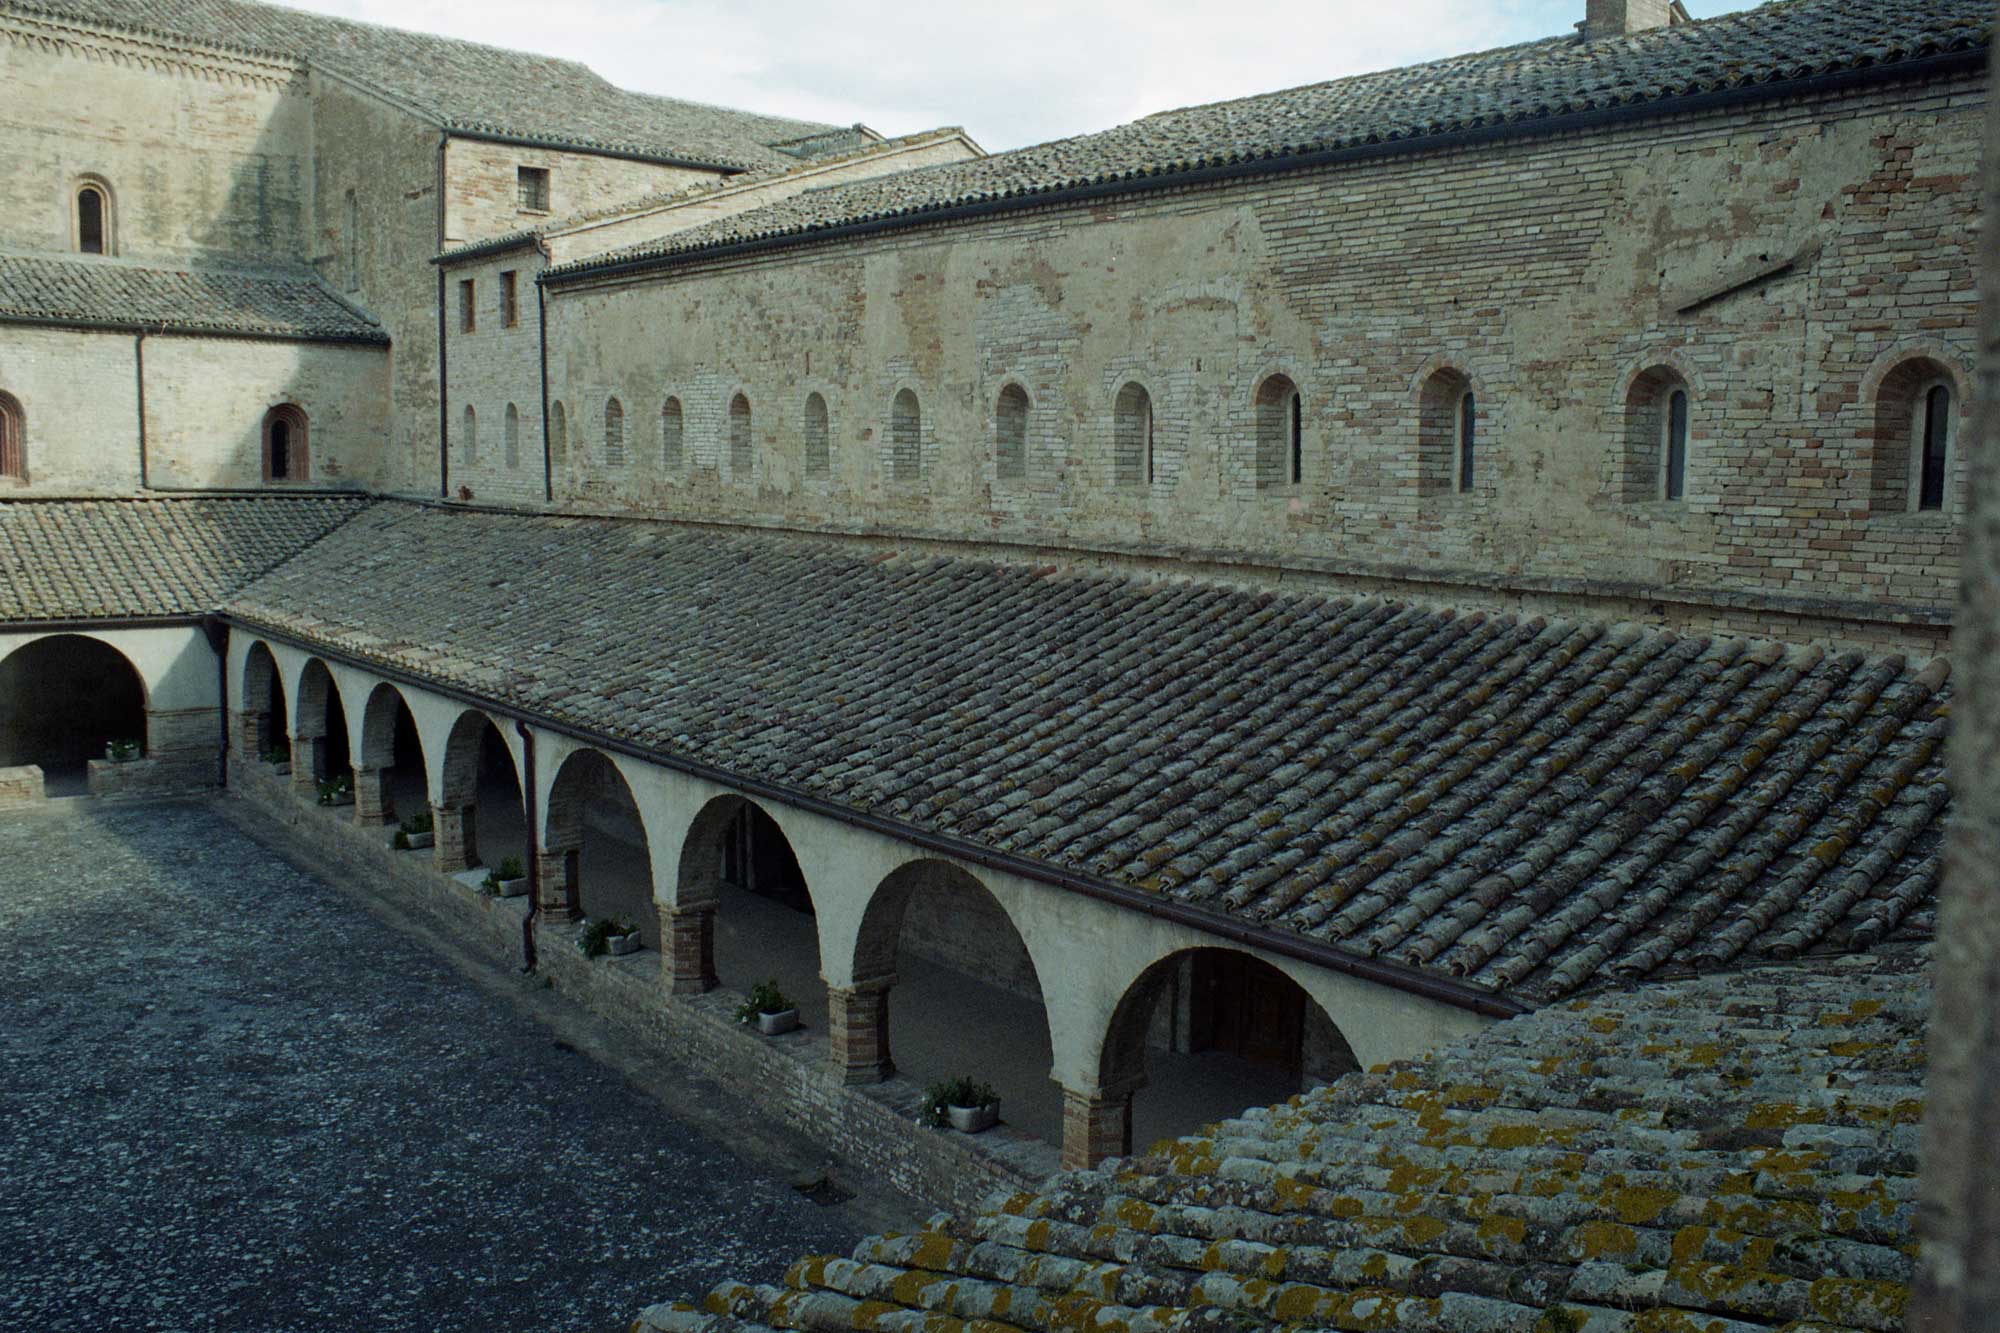 The Abbey of Chiaravalle di Fiastra